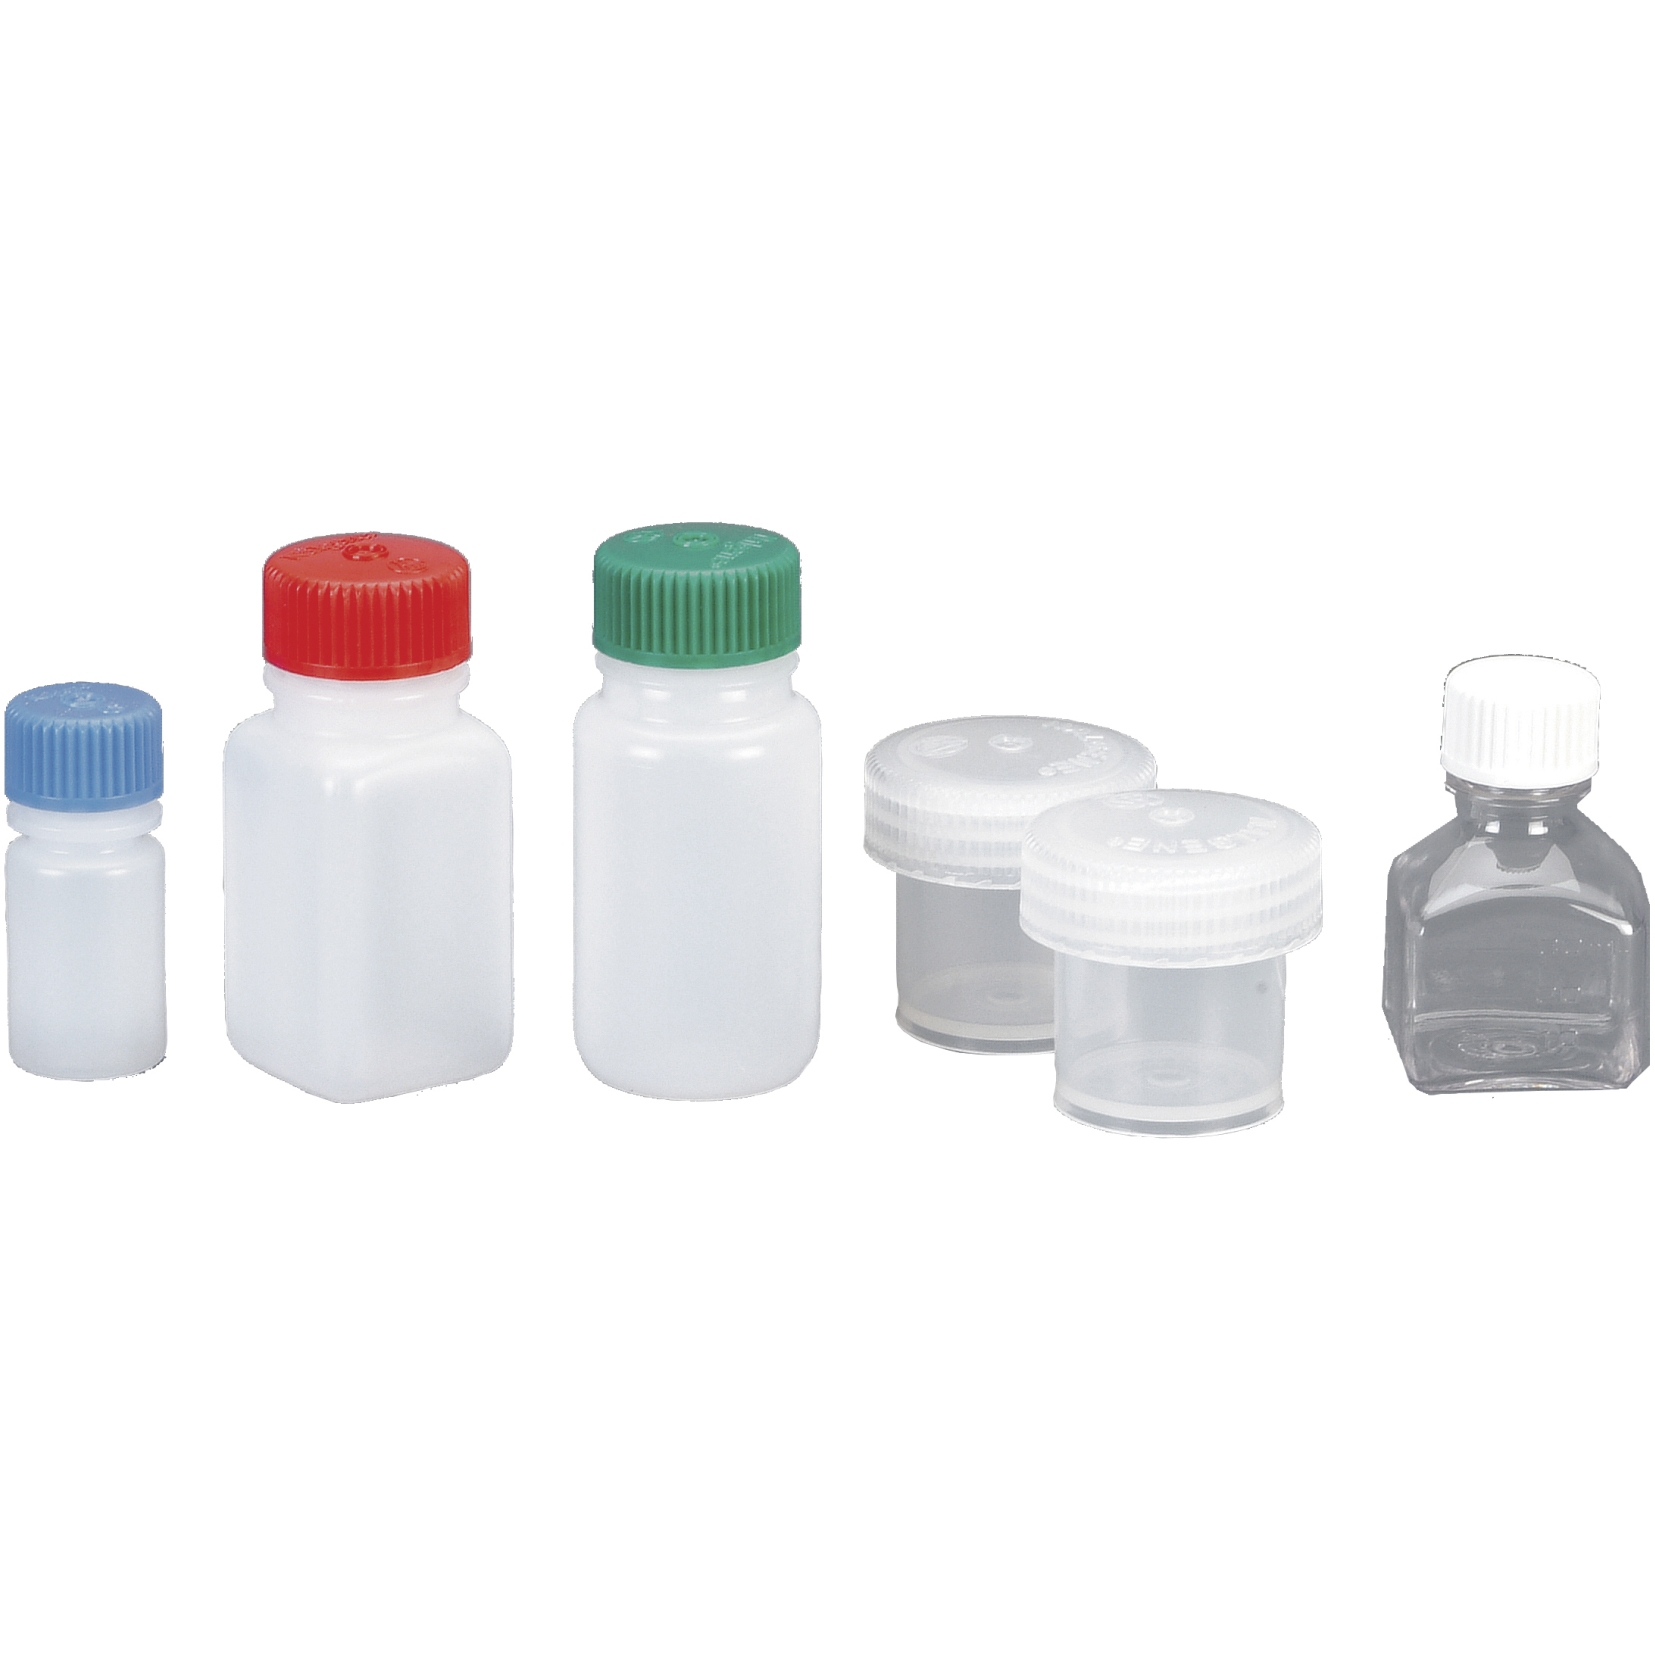 Productfoto van Nalgene Set of Cans - 6 Parts - Empty Bottles